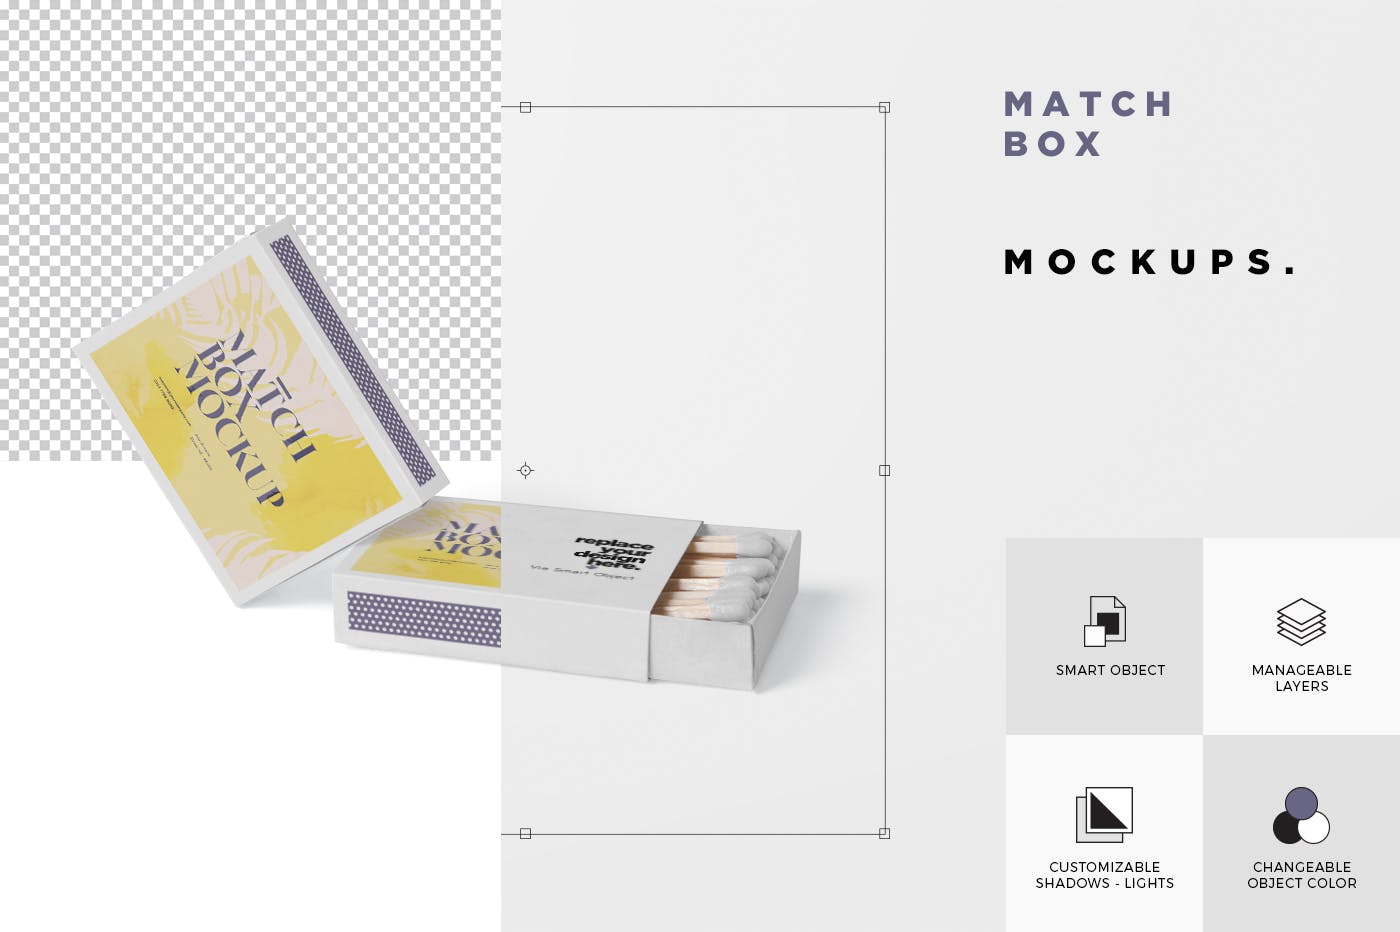 火柴盒外观设计样机模板 Match Box Mock-Up Set插图(6)